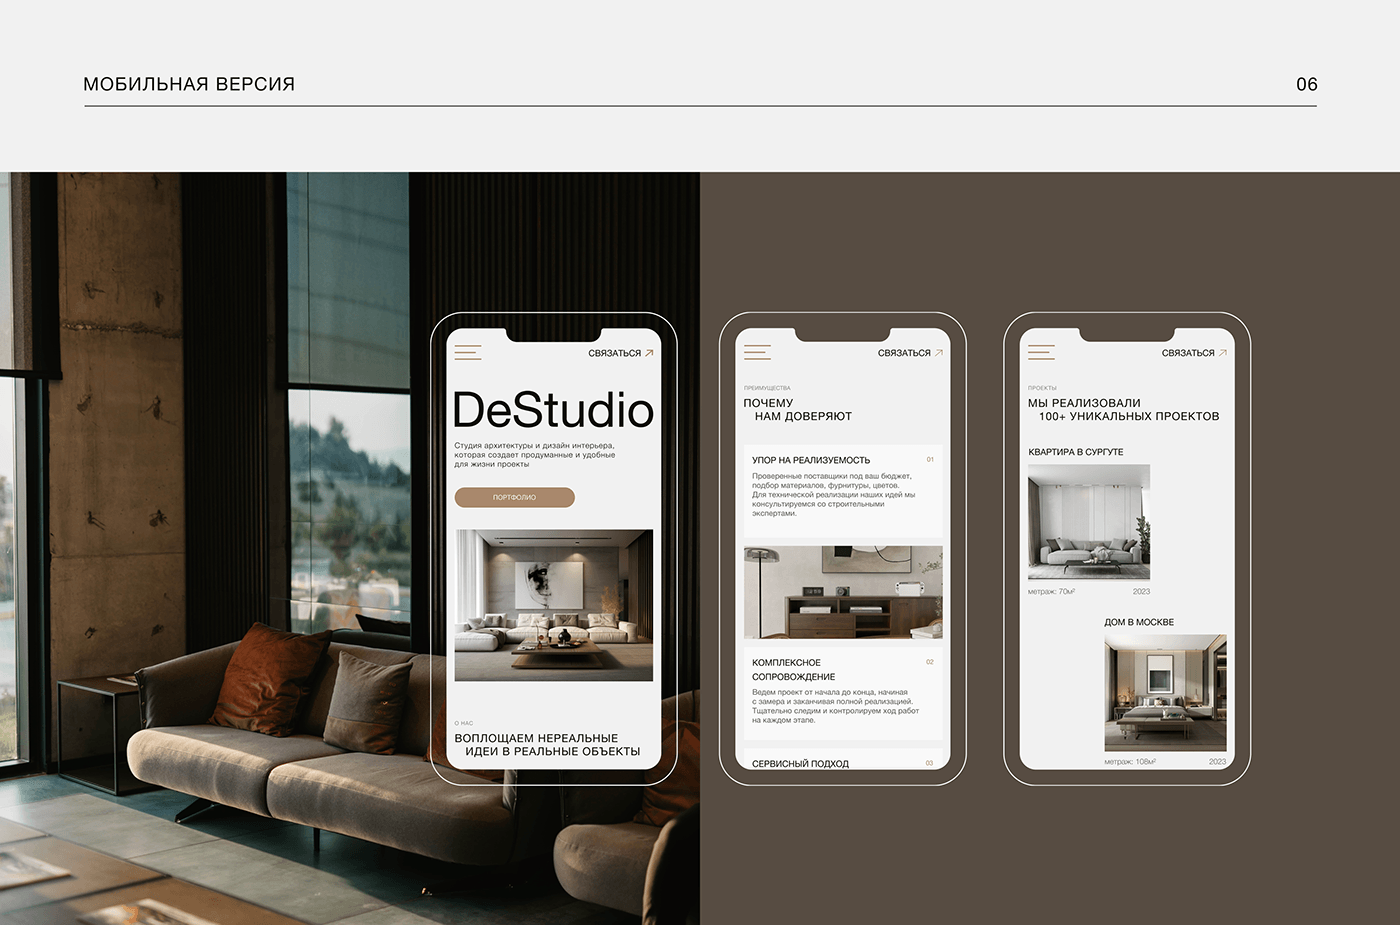 Website DeStudio | Interior design studio — Изображение №14 — Интерфейсы на Dprofile